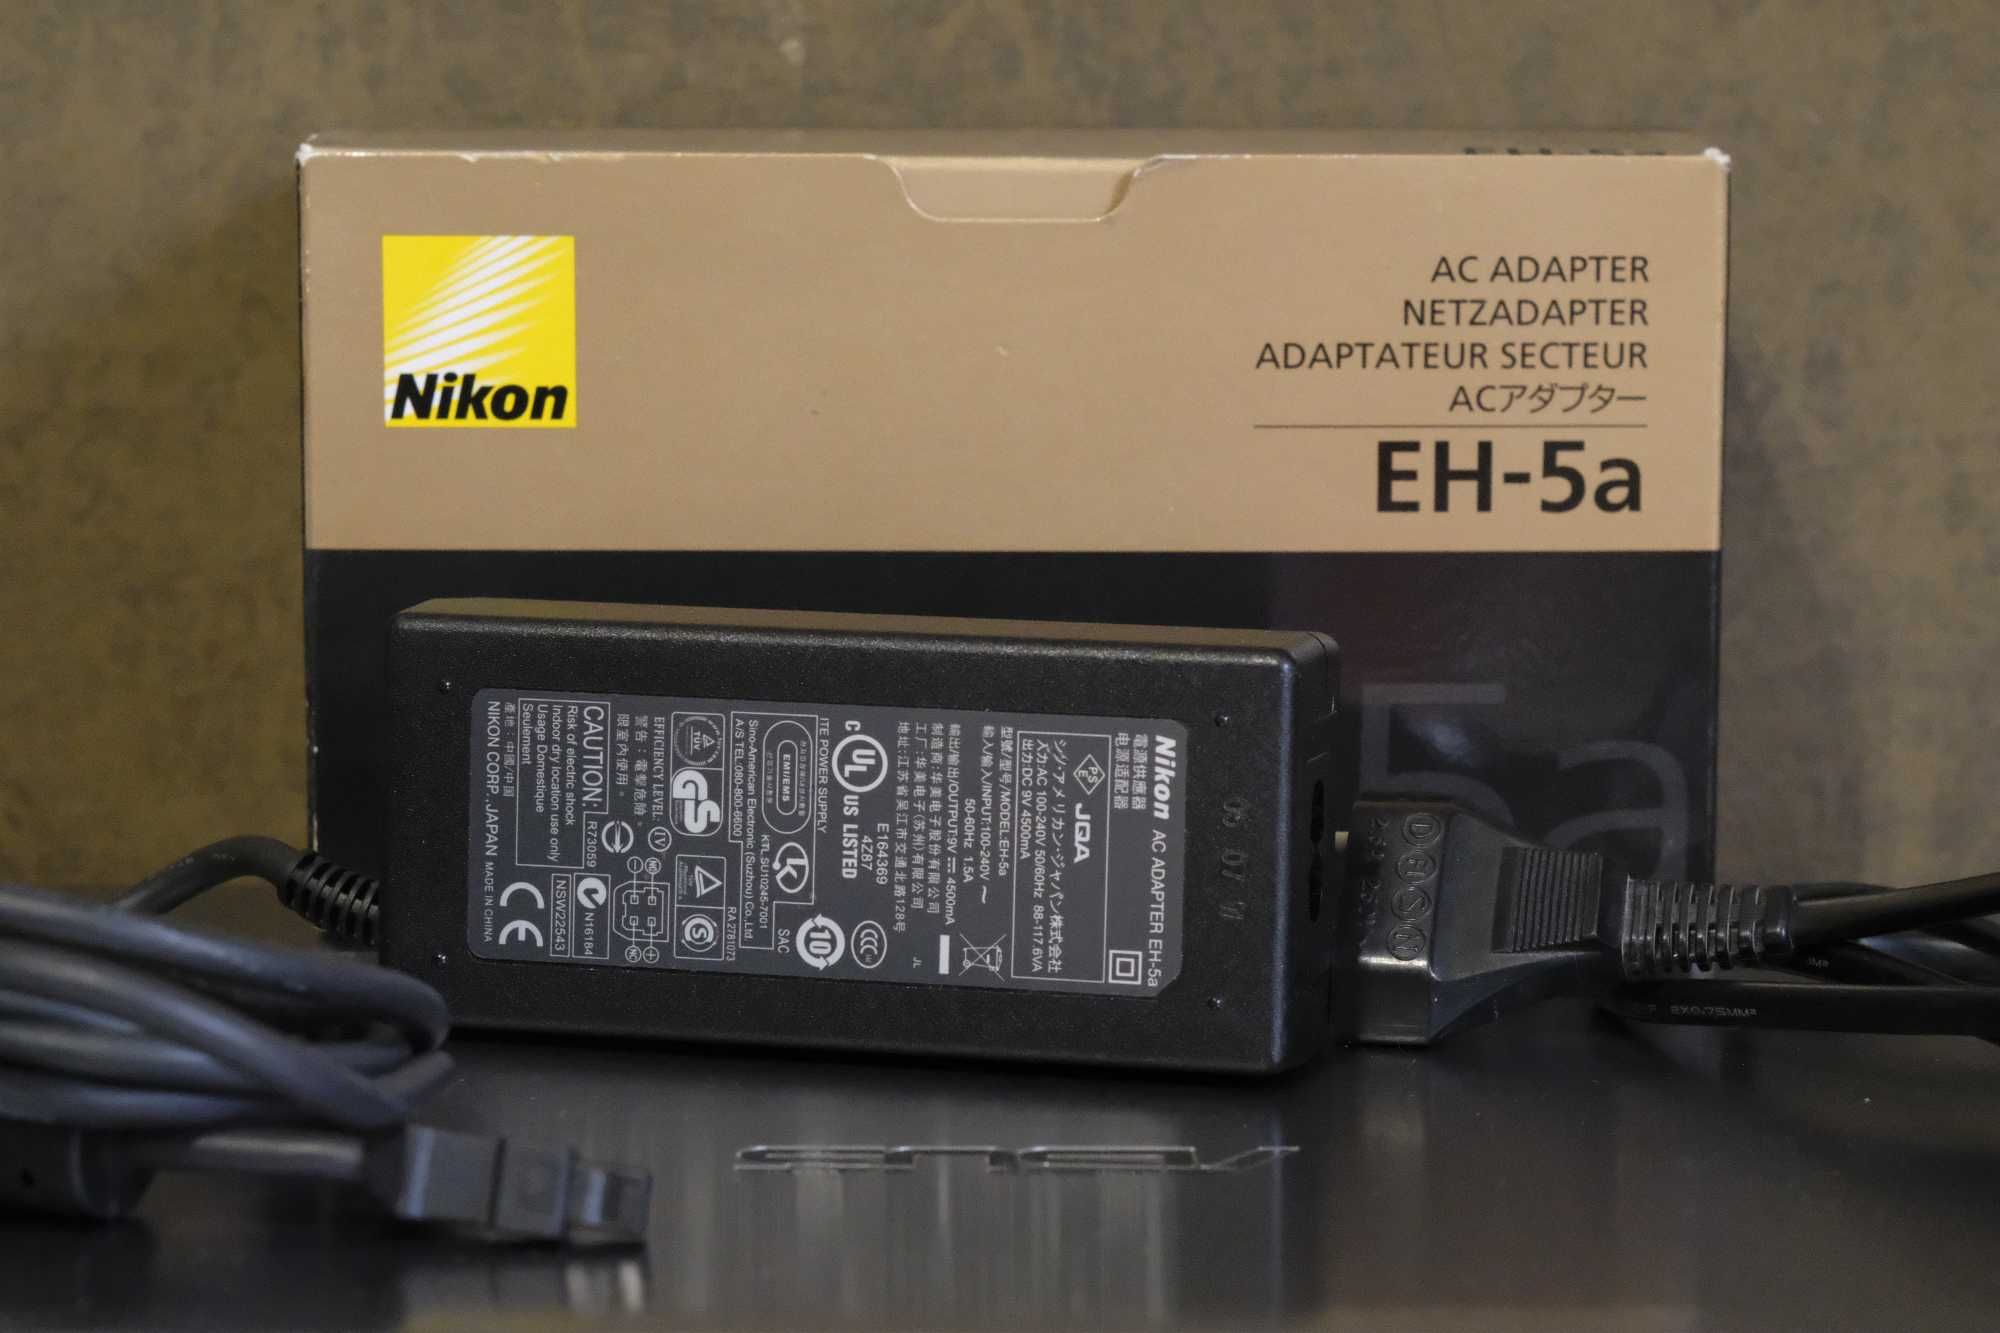 NIKON EP-5A power connector + NIKON EH-5A ac adapter netzadapter